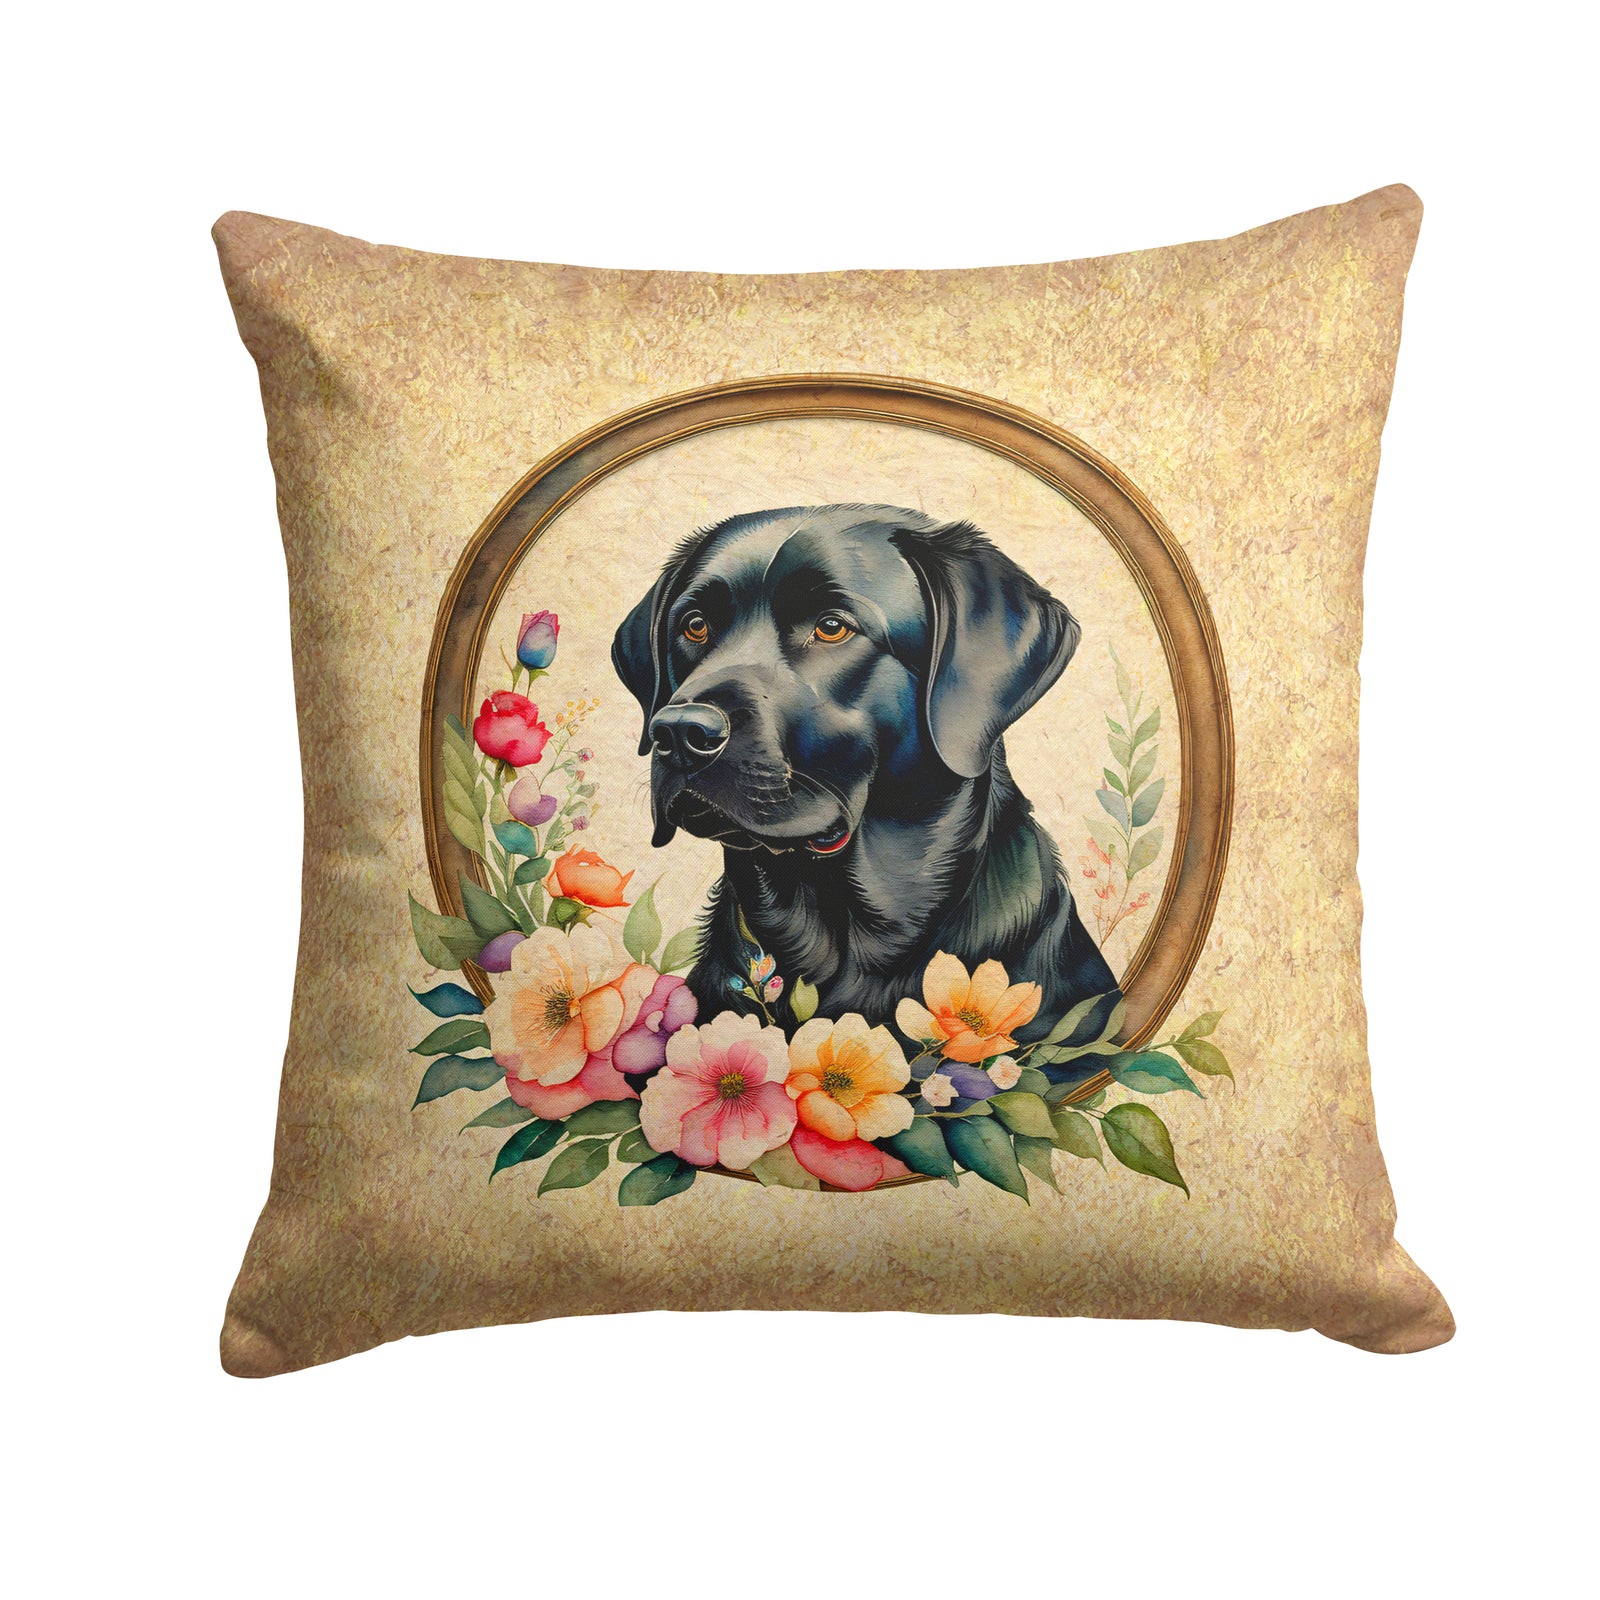 Buy this Black Labrador Retriever and Flowers Fabric Decorative Pillow